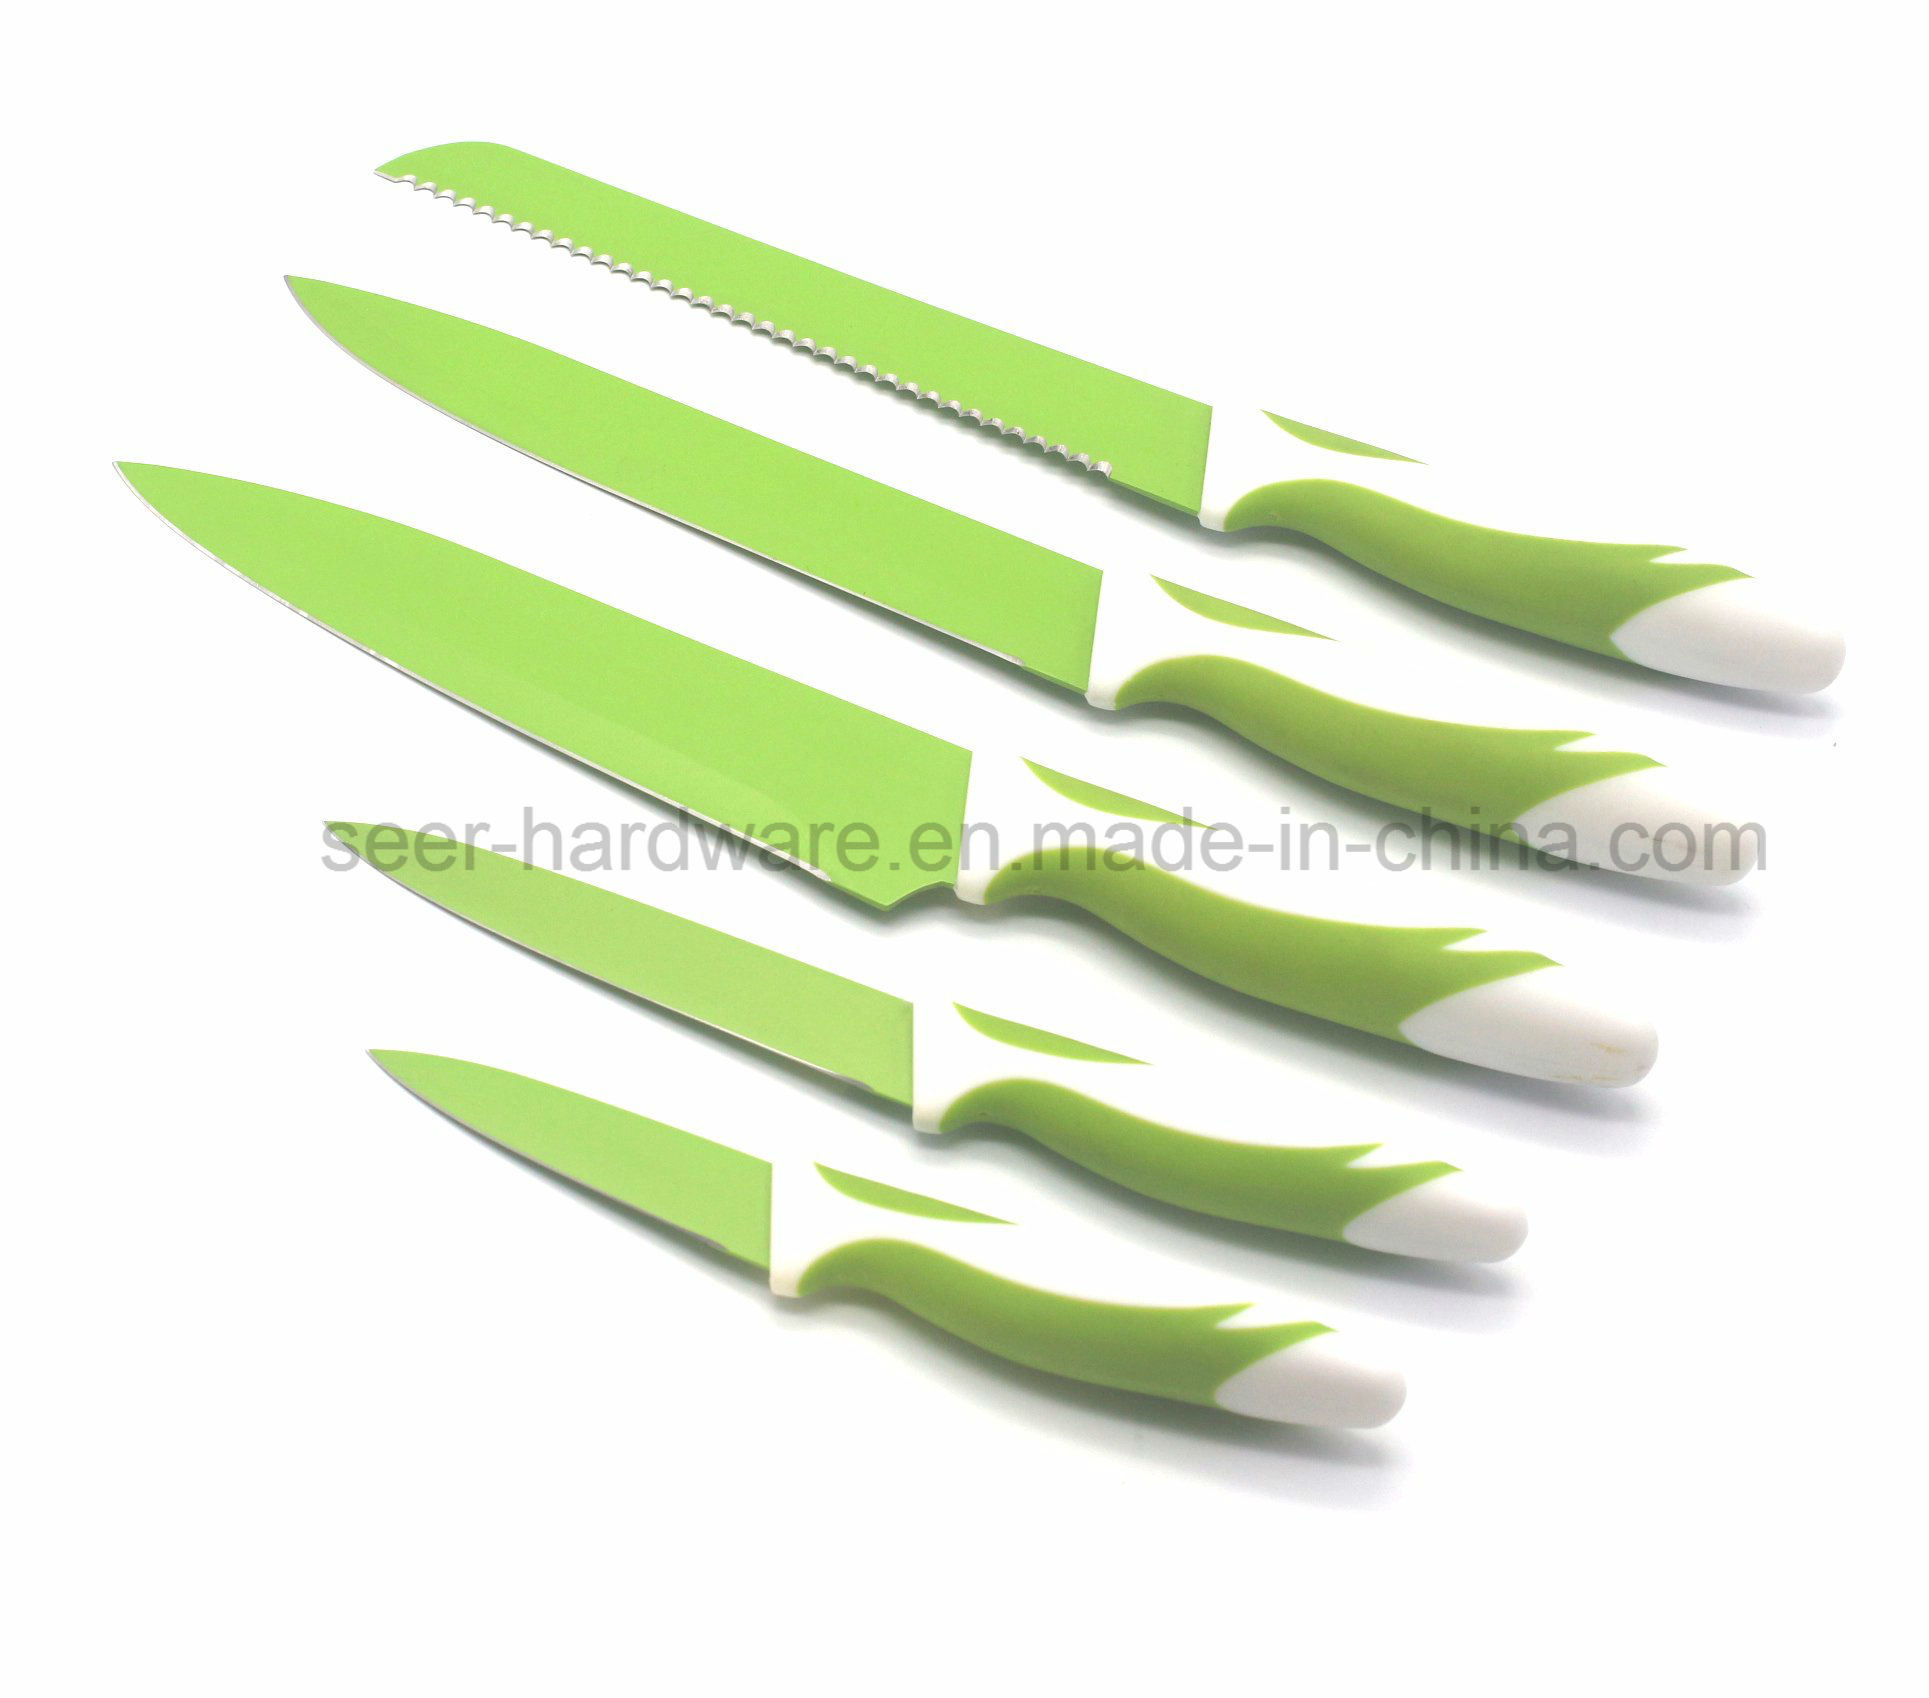 5PCS Colorful Plastic Handle Kitchen Knife (SE-1508)